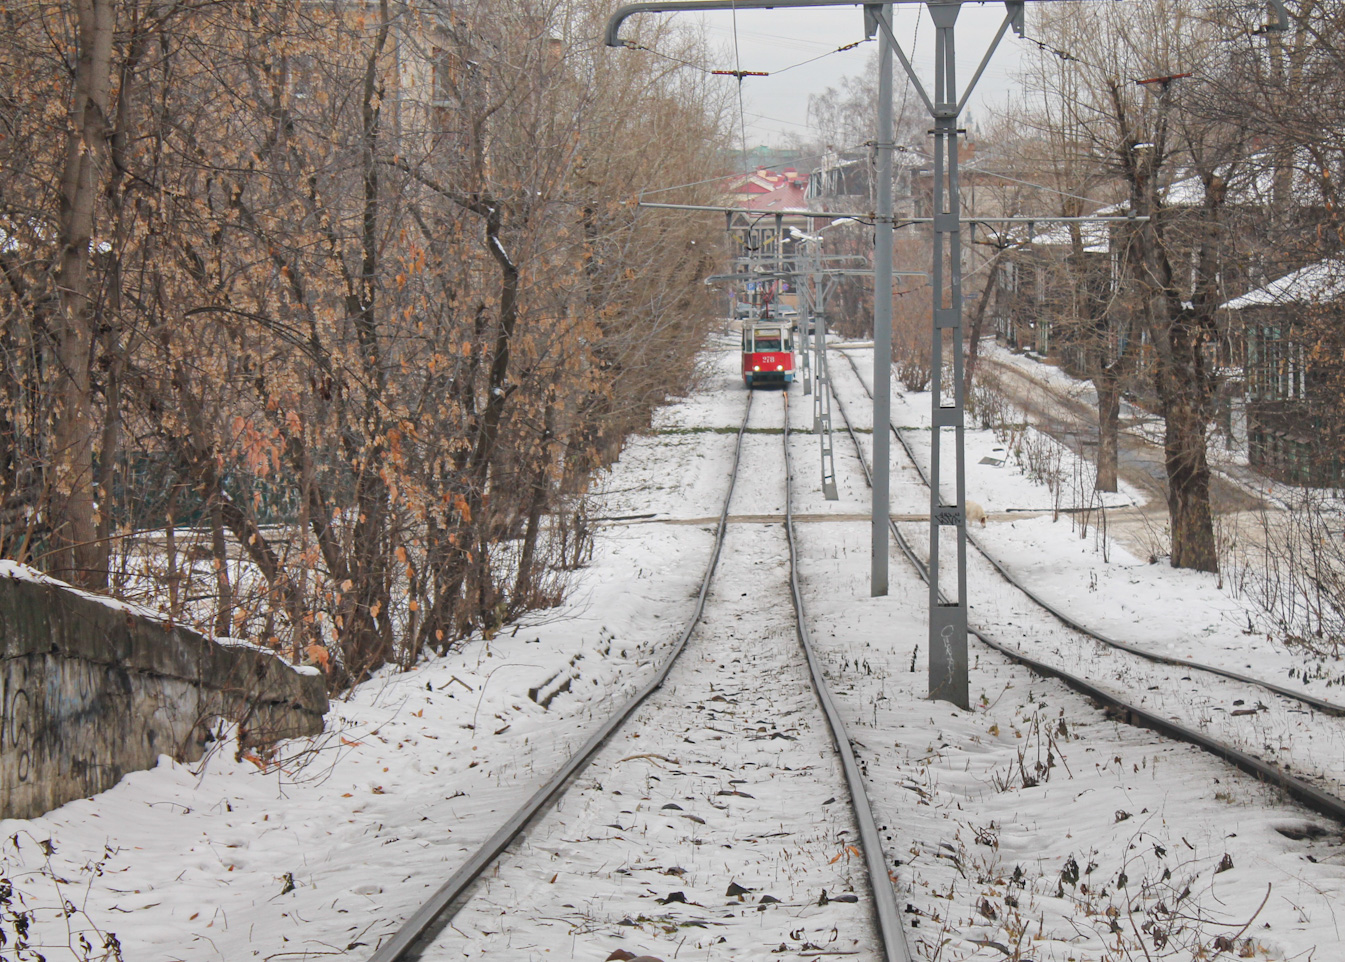 Томск — Трамвайные линии, конечные